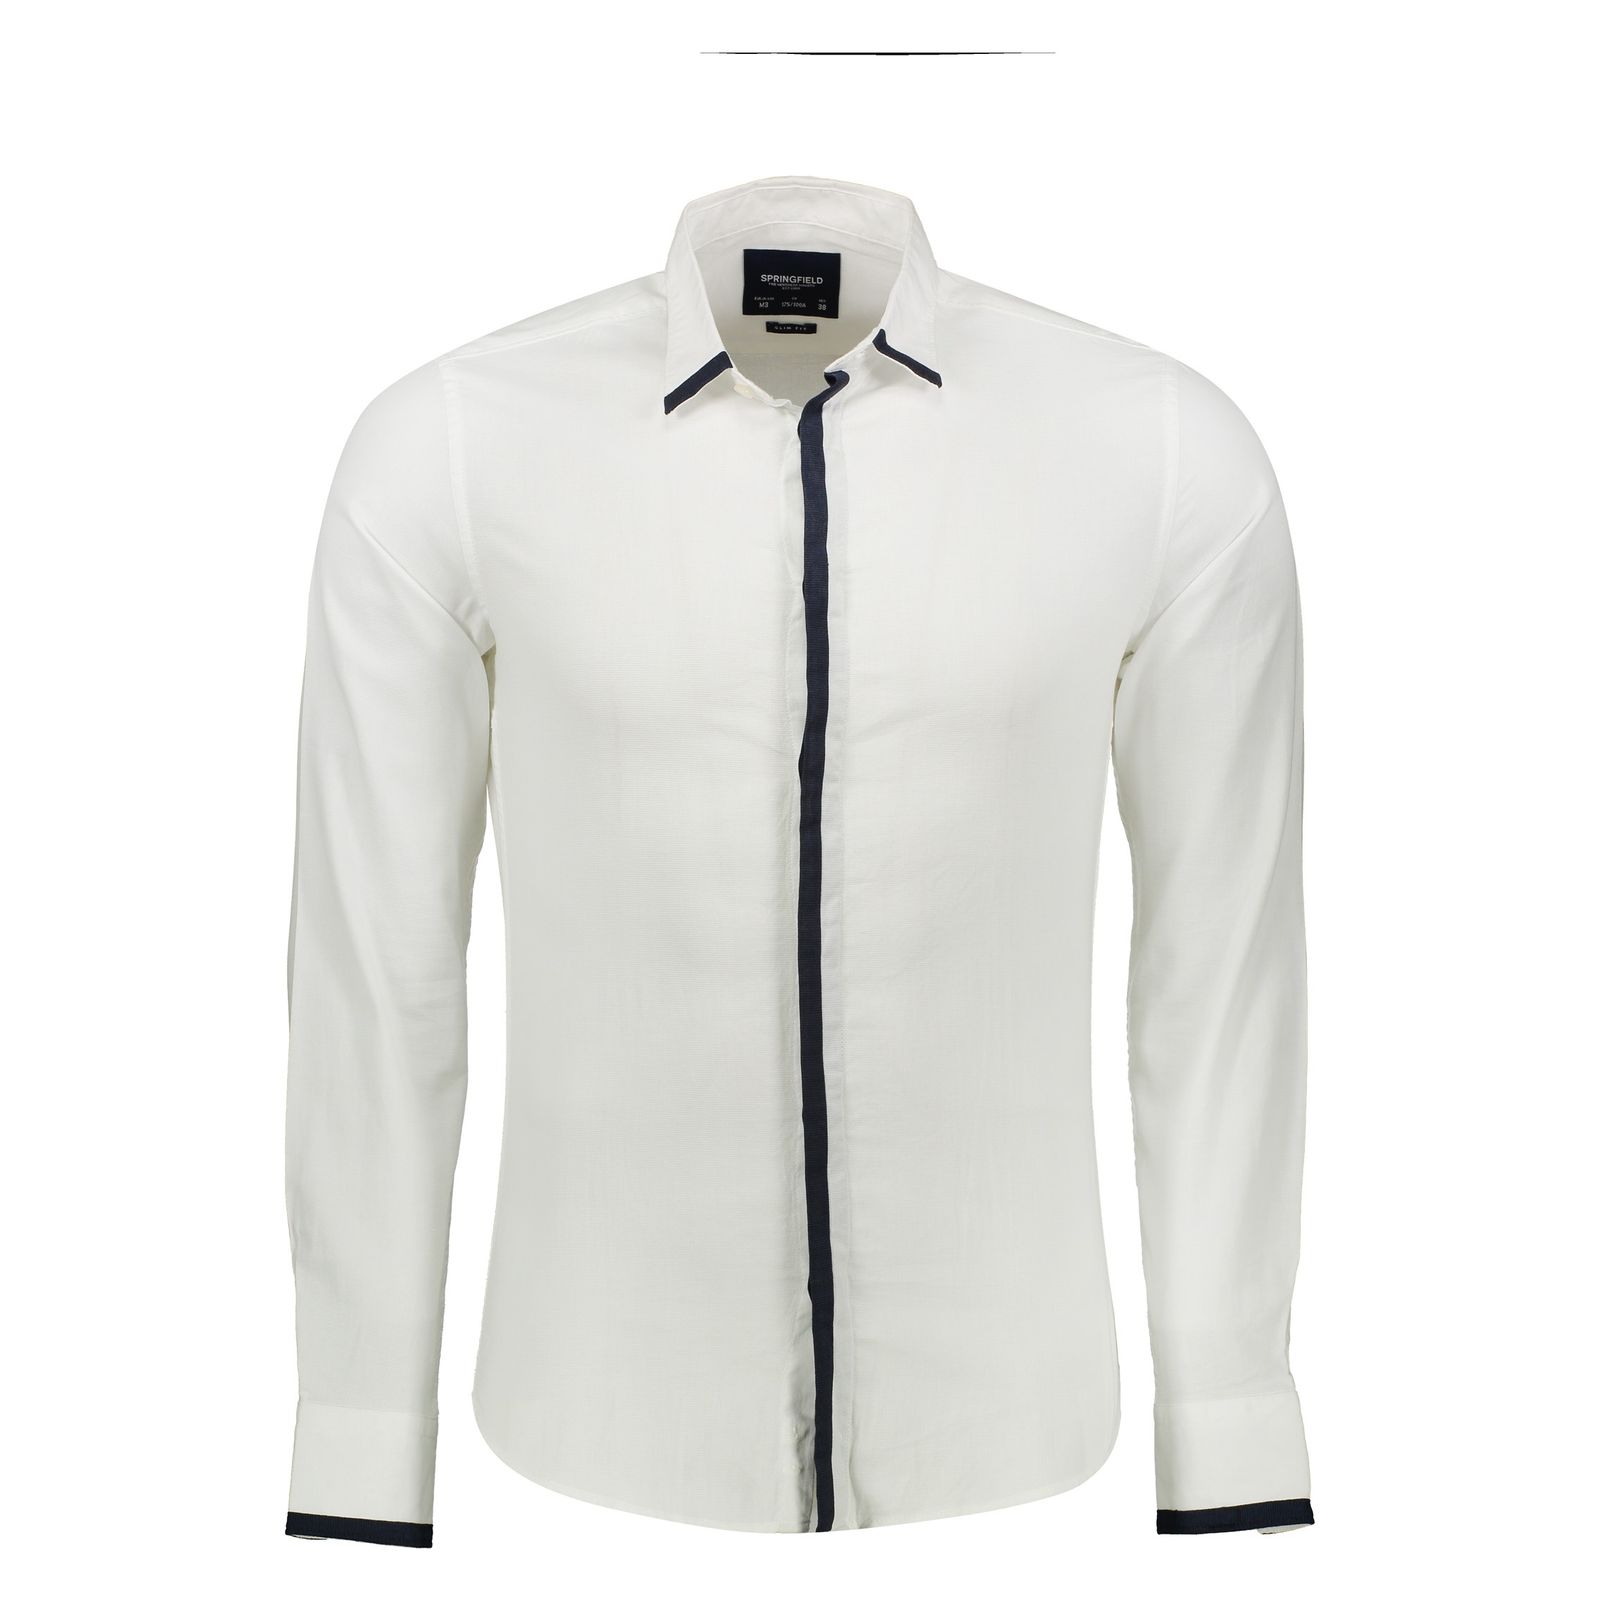 پیراهن مردانه اسپرینگ فیلد مدل 1506668-99 - سفید - 2